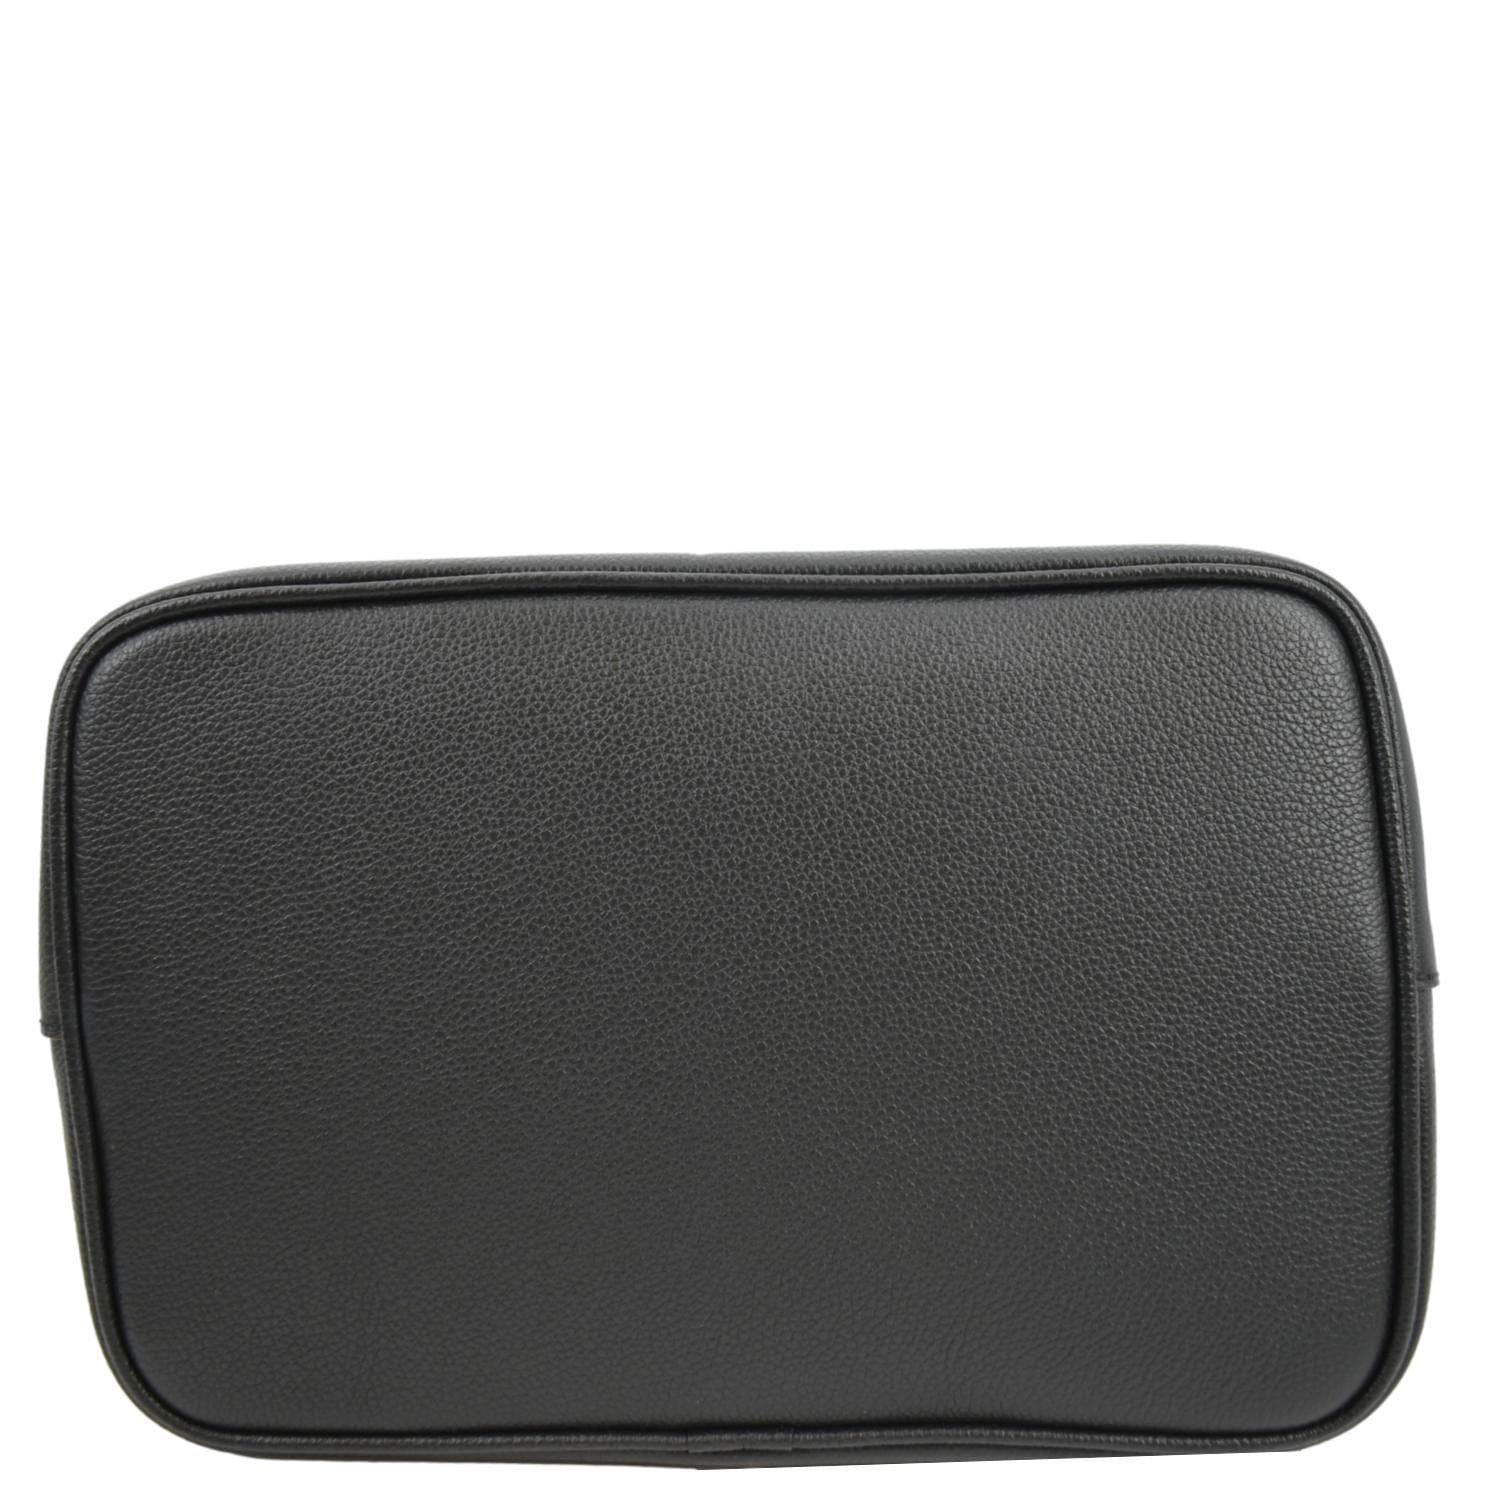 Louis Vuitton, Bags, Louisvuitton Neonoe Mm Monogram Leather Shoulder Bag  Bicolor Black Beige